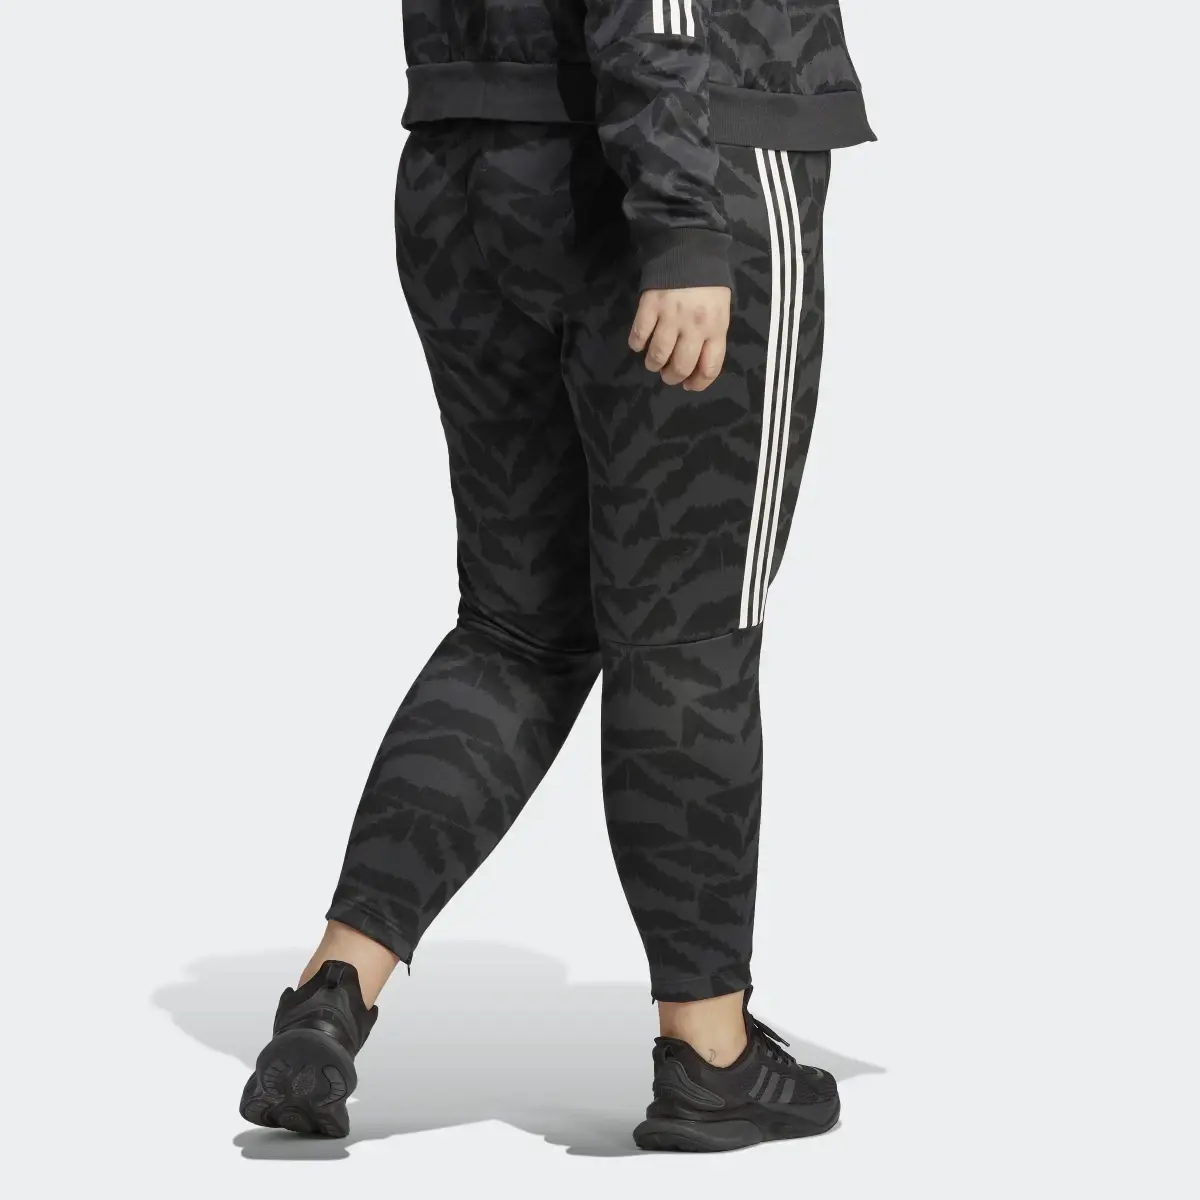 Adidas Tiro Suit Up Lifestyle Track Pant (Plus Size). 2